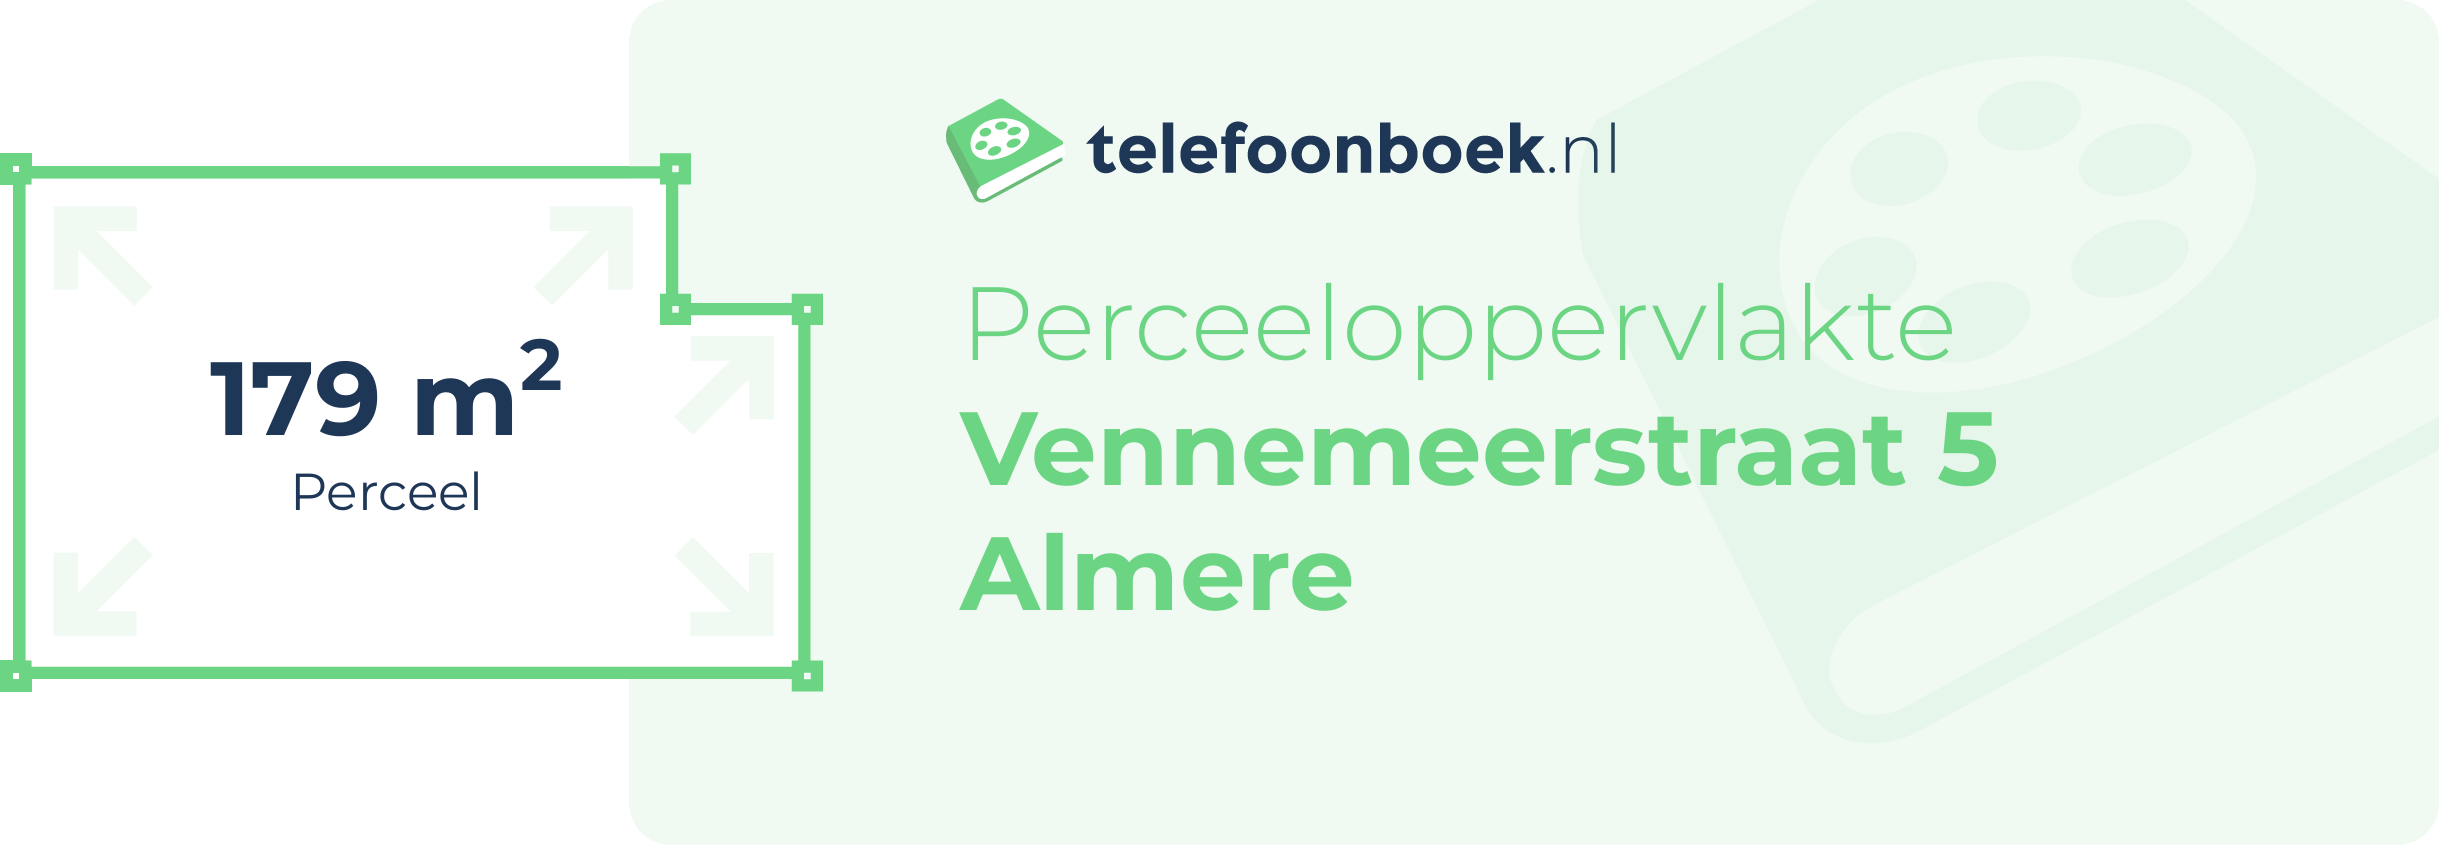 Perceeloppervlakte Vennemeerstraat 5 Almere